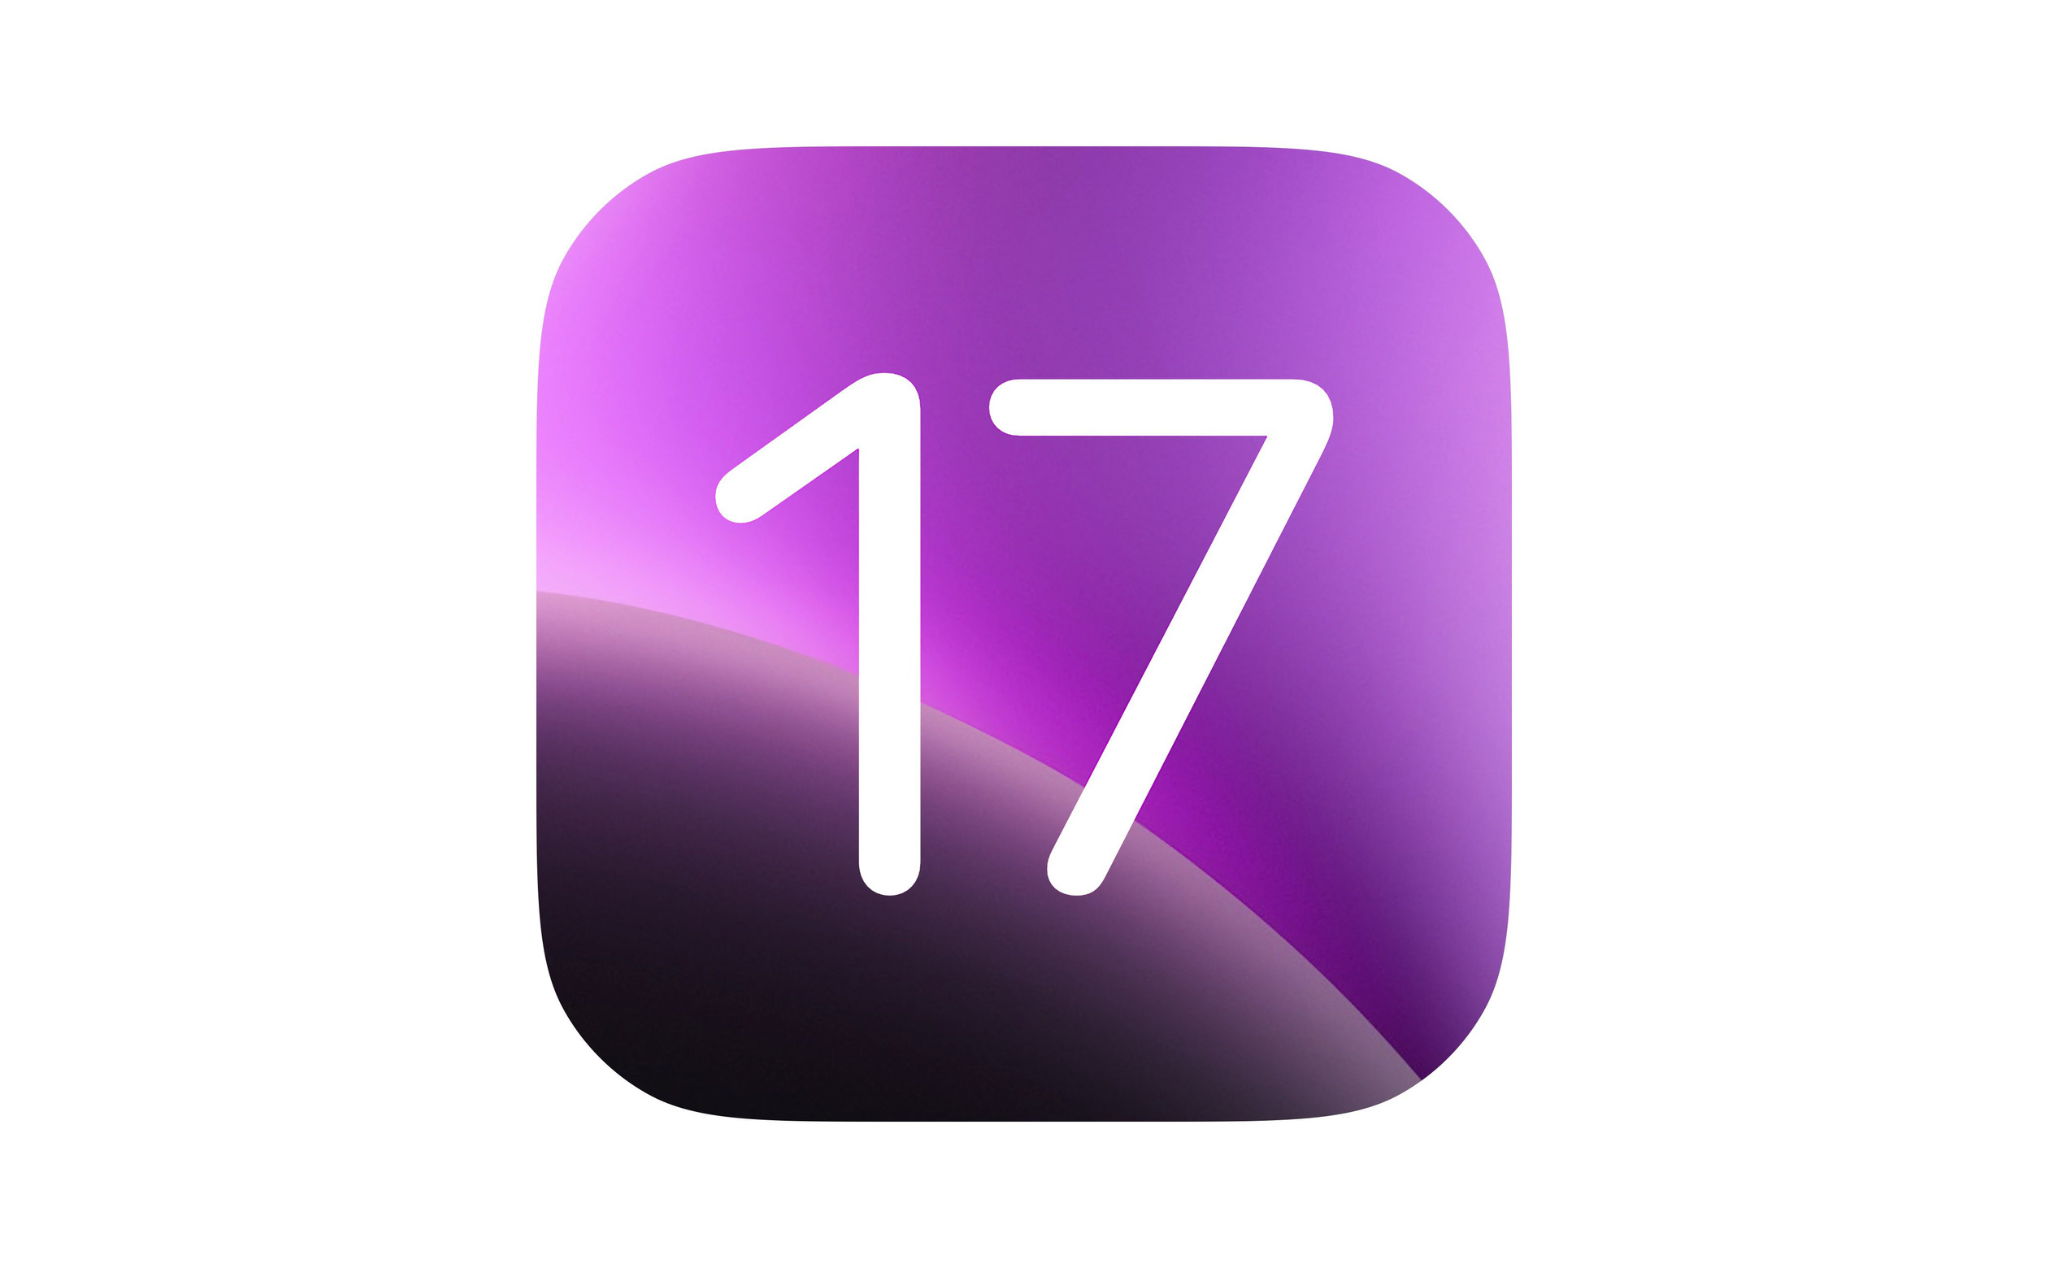 Anh em muốn Apple sẽ bổ sung tính năng gì trên iOS 17?